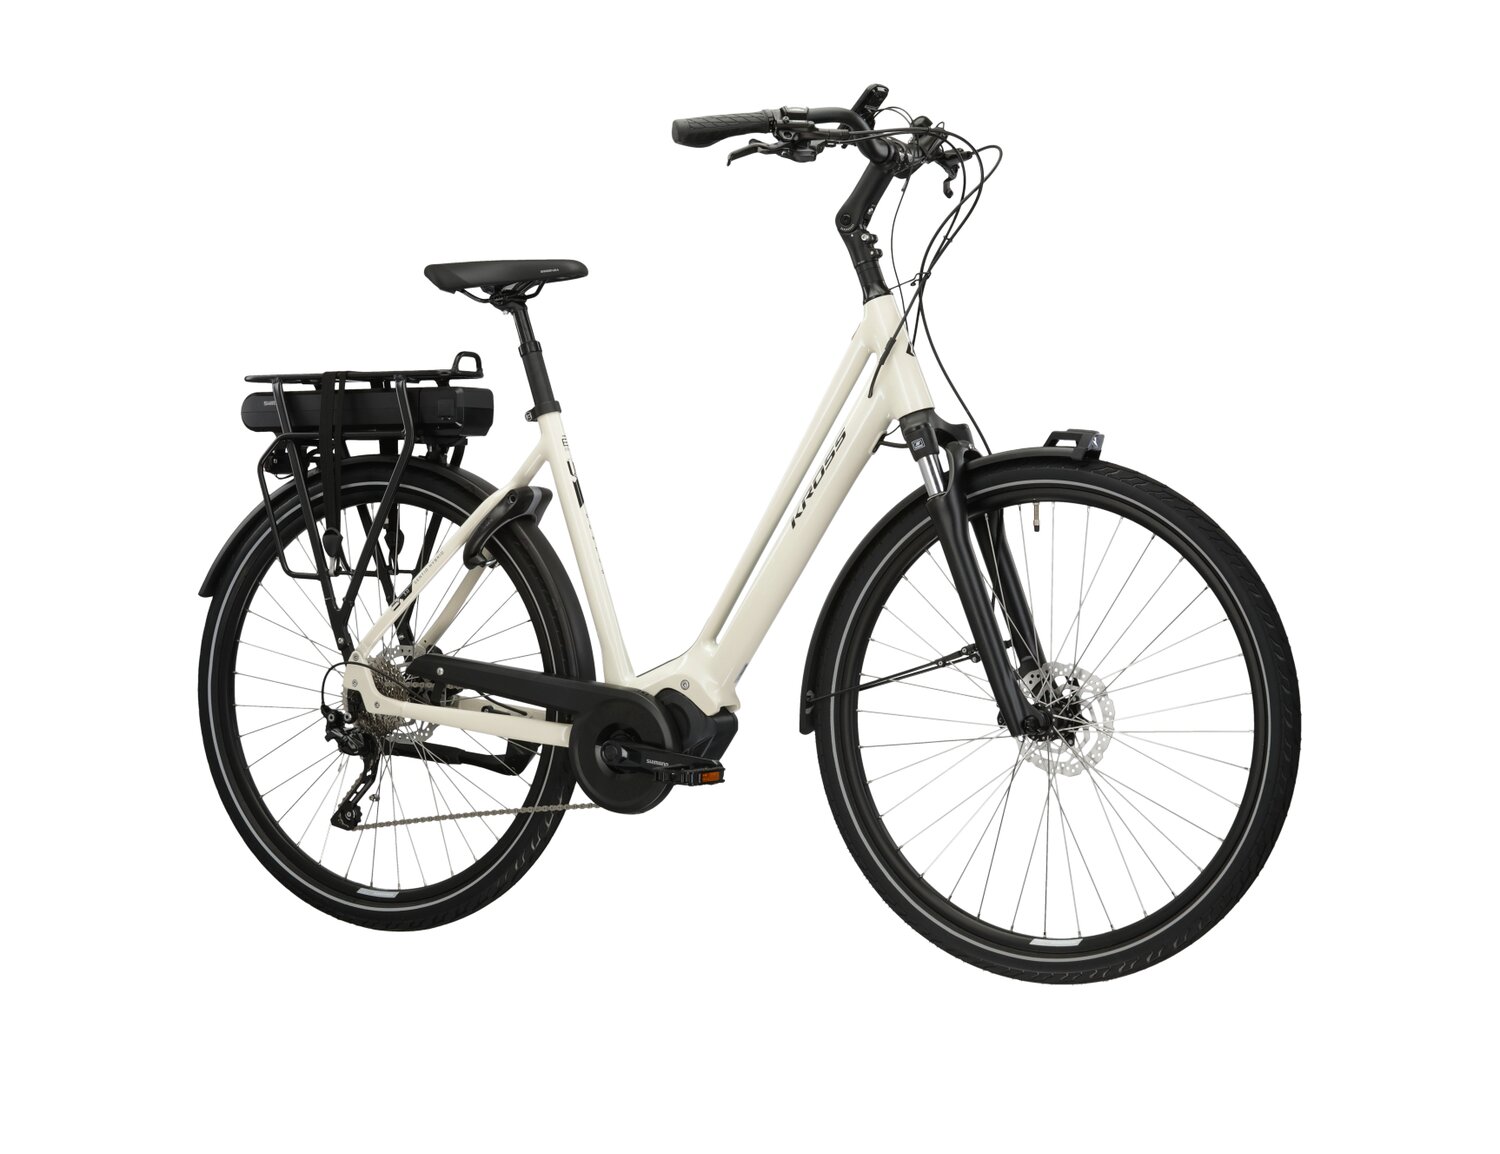  Elektryczny rower miejski Ebike City KROSS Sentio Hybrid 3.0 418 Wh UNI na aluminiowej ramie w kolorze kremowym wyposażony w osprzęt shimano i napęd elektryczny Shimano